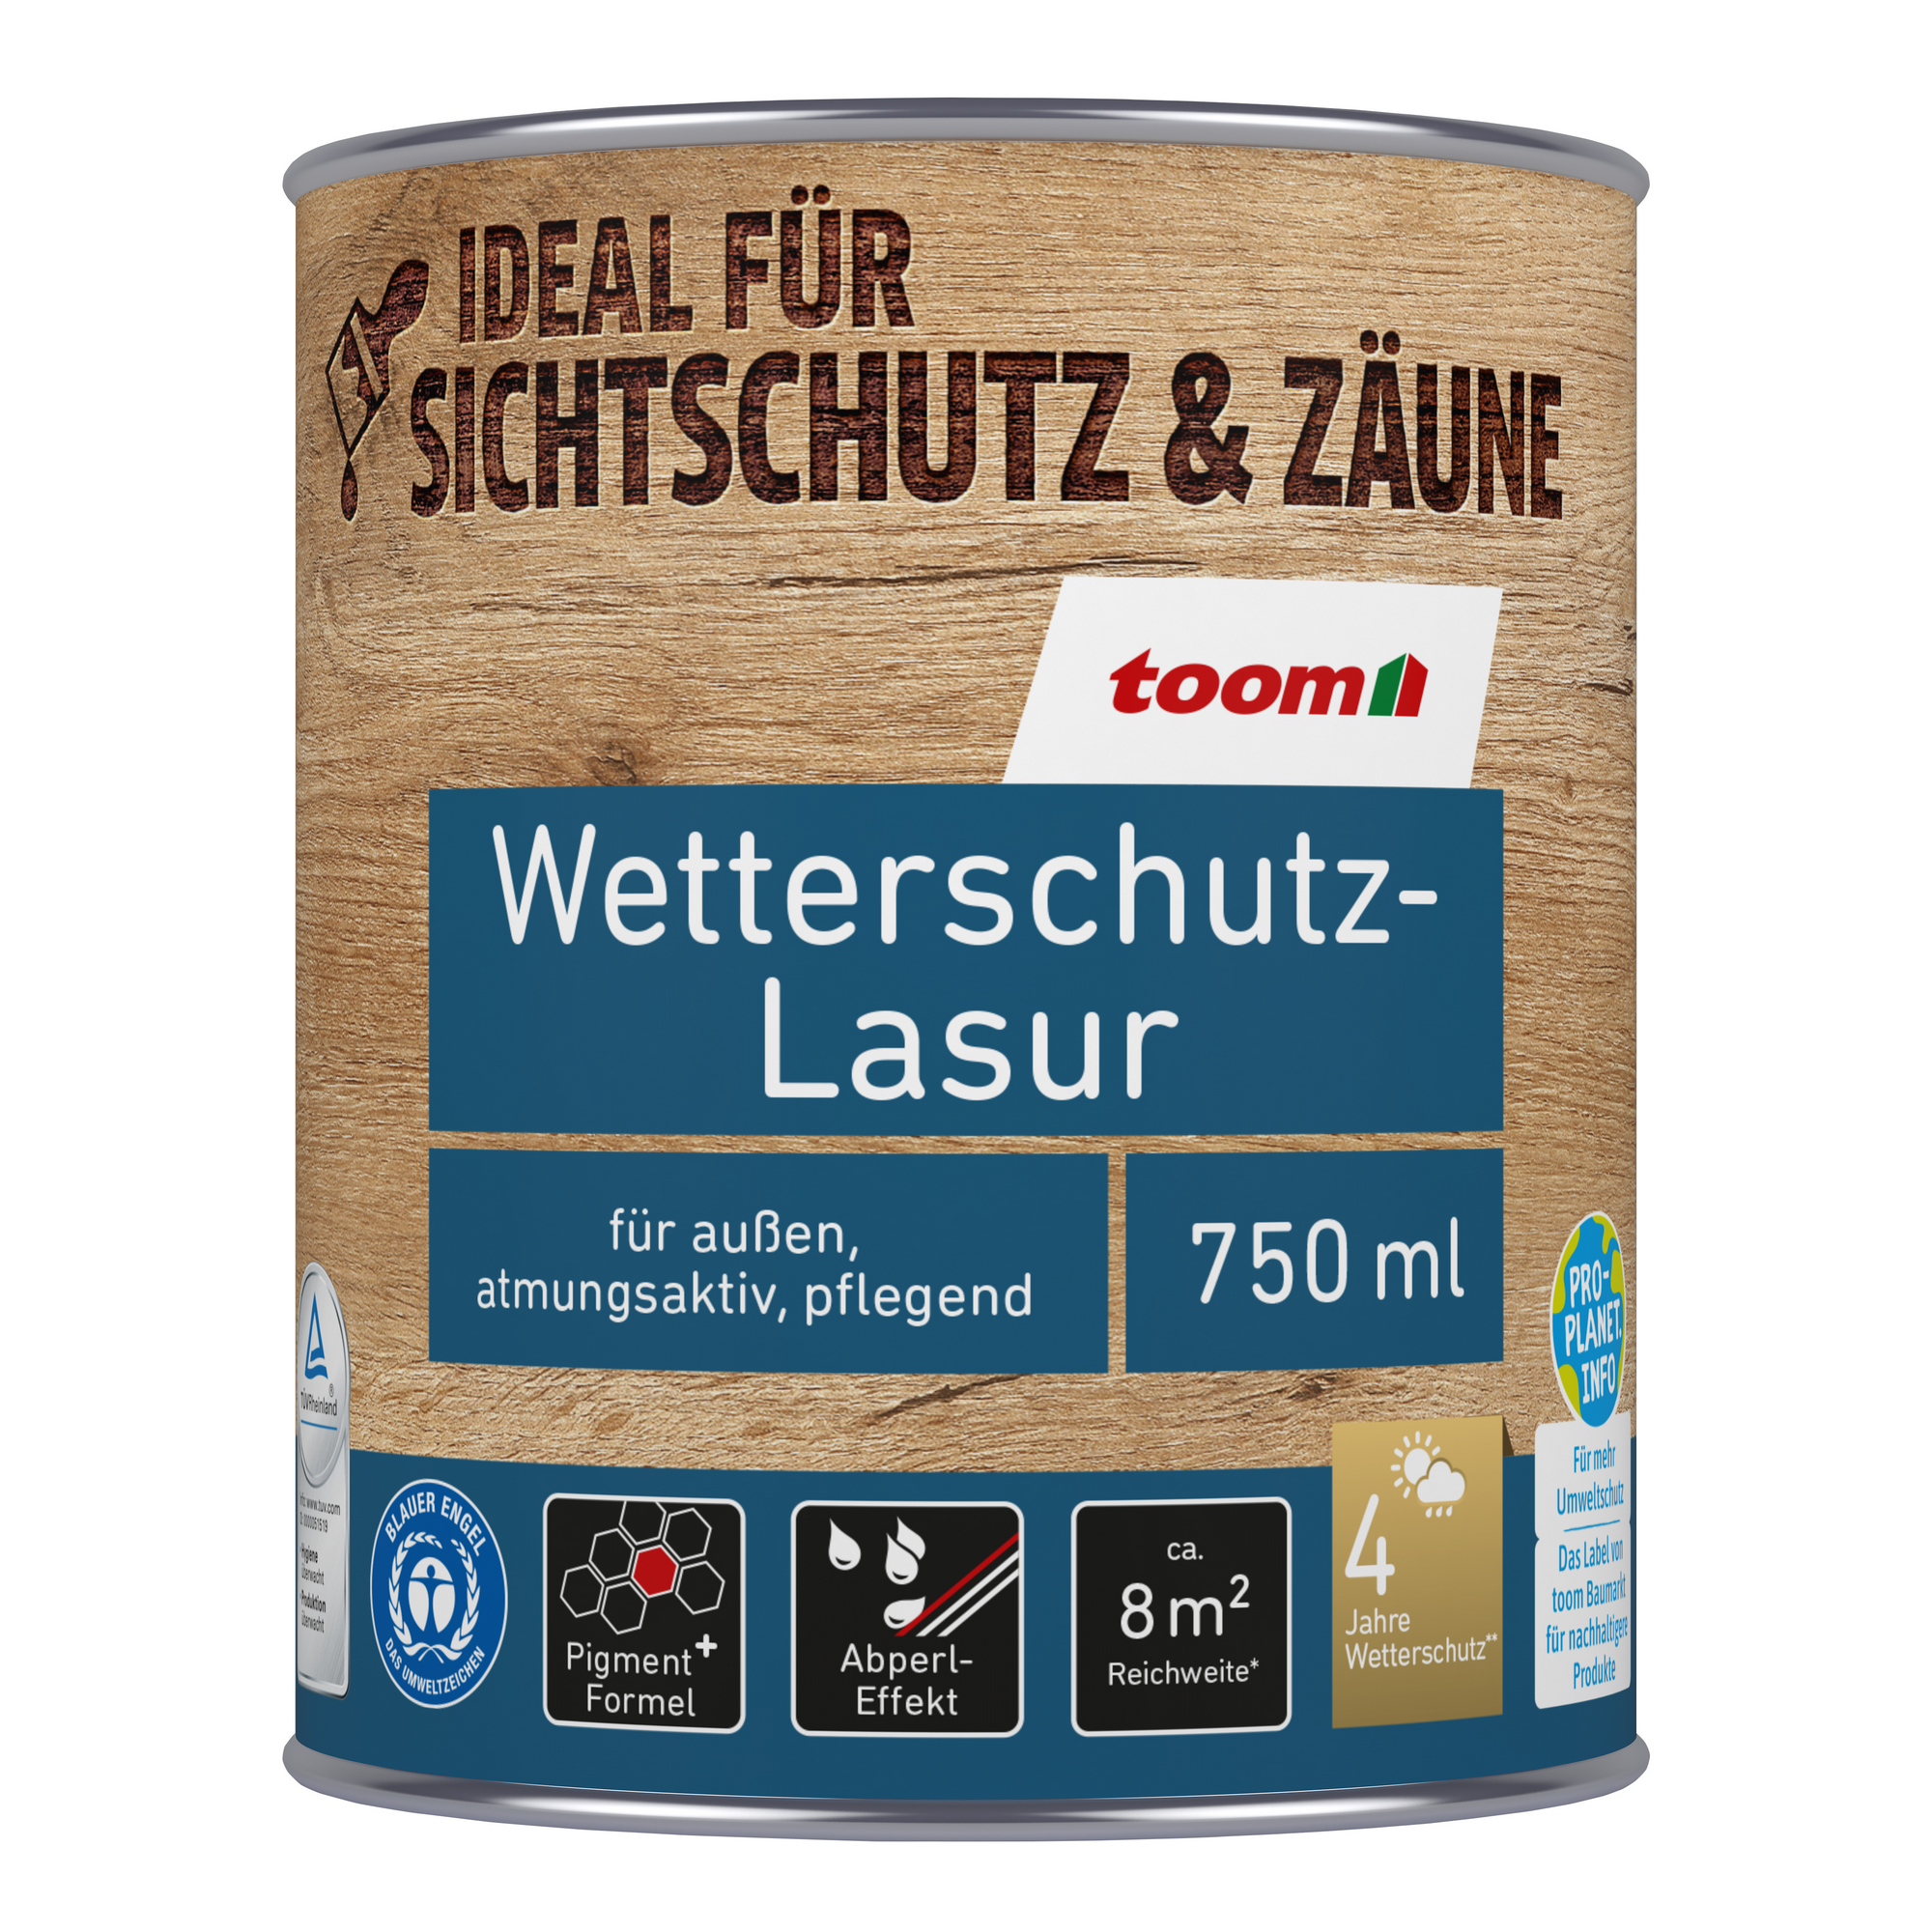 Wetterschutz-Lasur silbergrau 750 ml + product picture